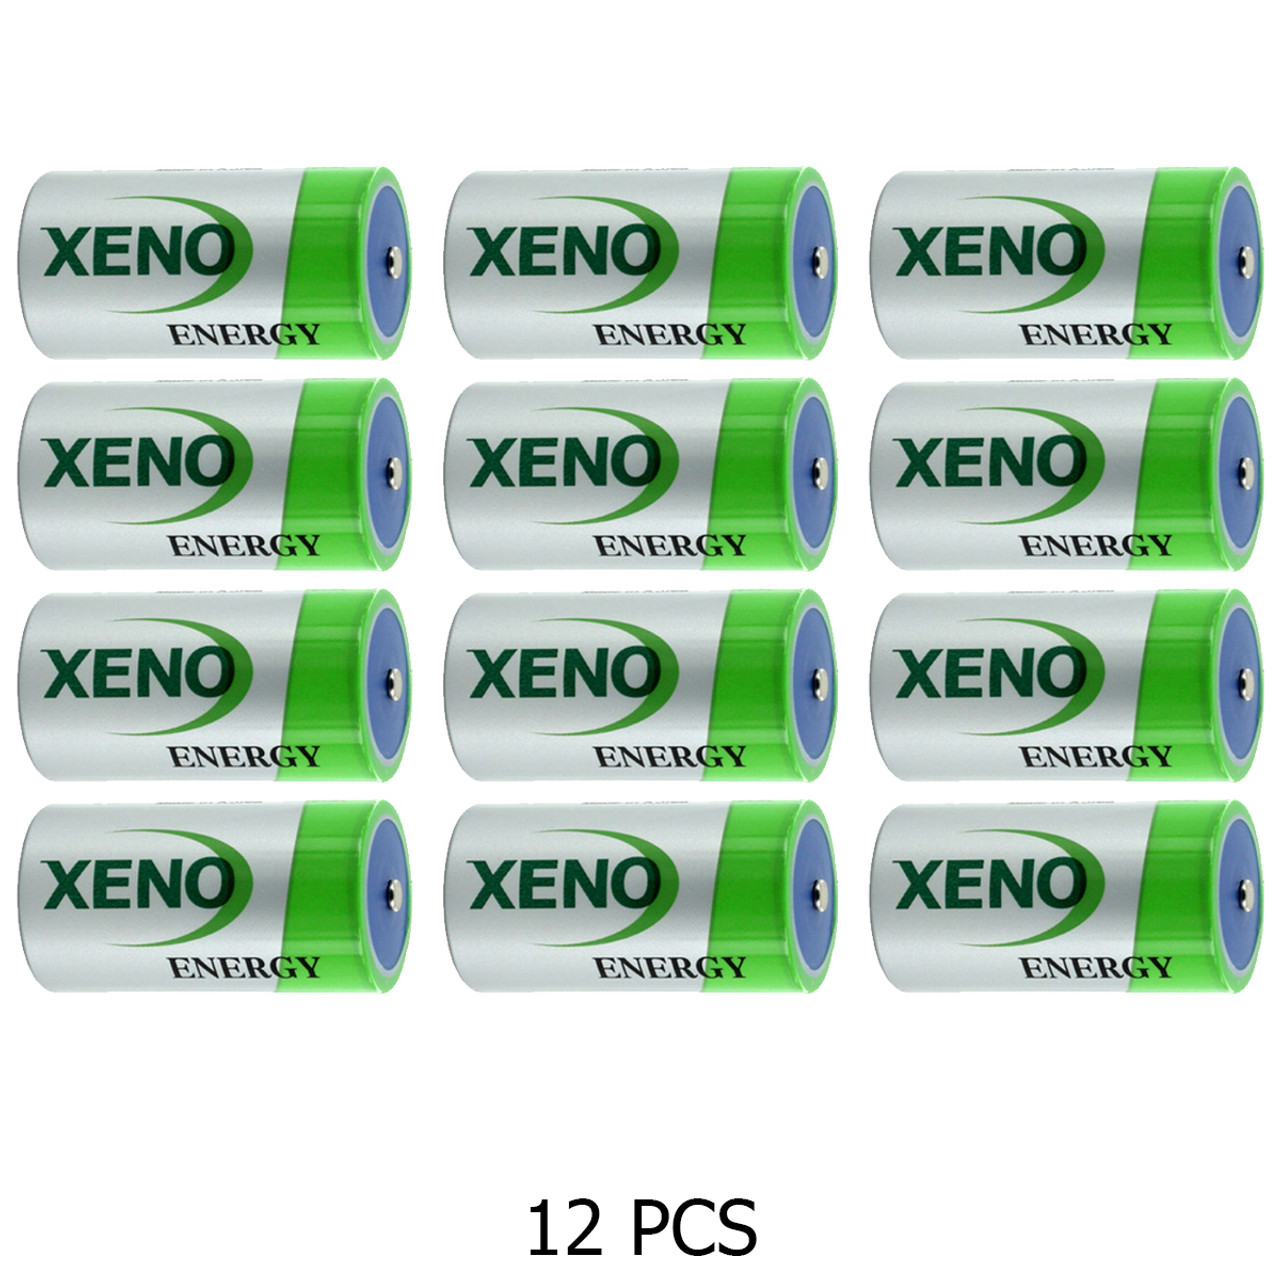 XL-060F - Xeno Energy AA 3.6V Lithium Battery